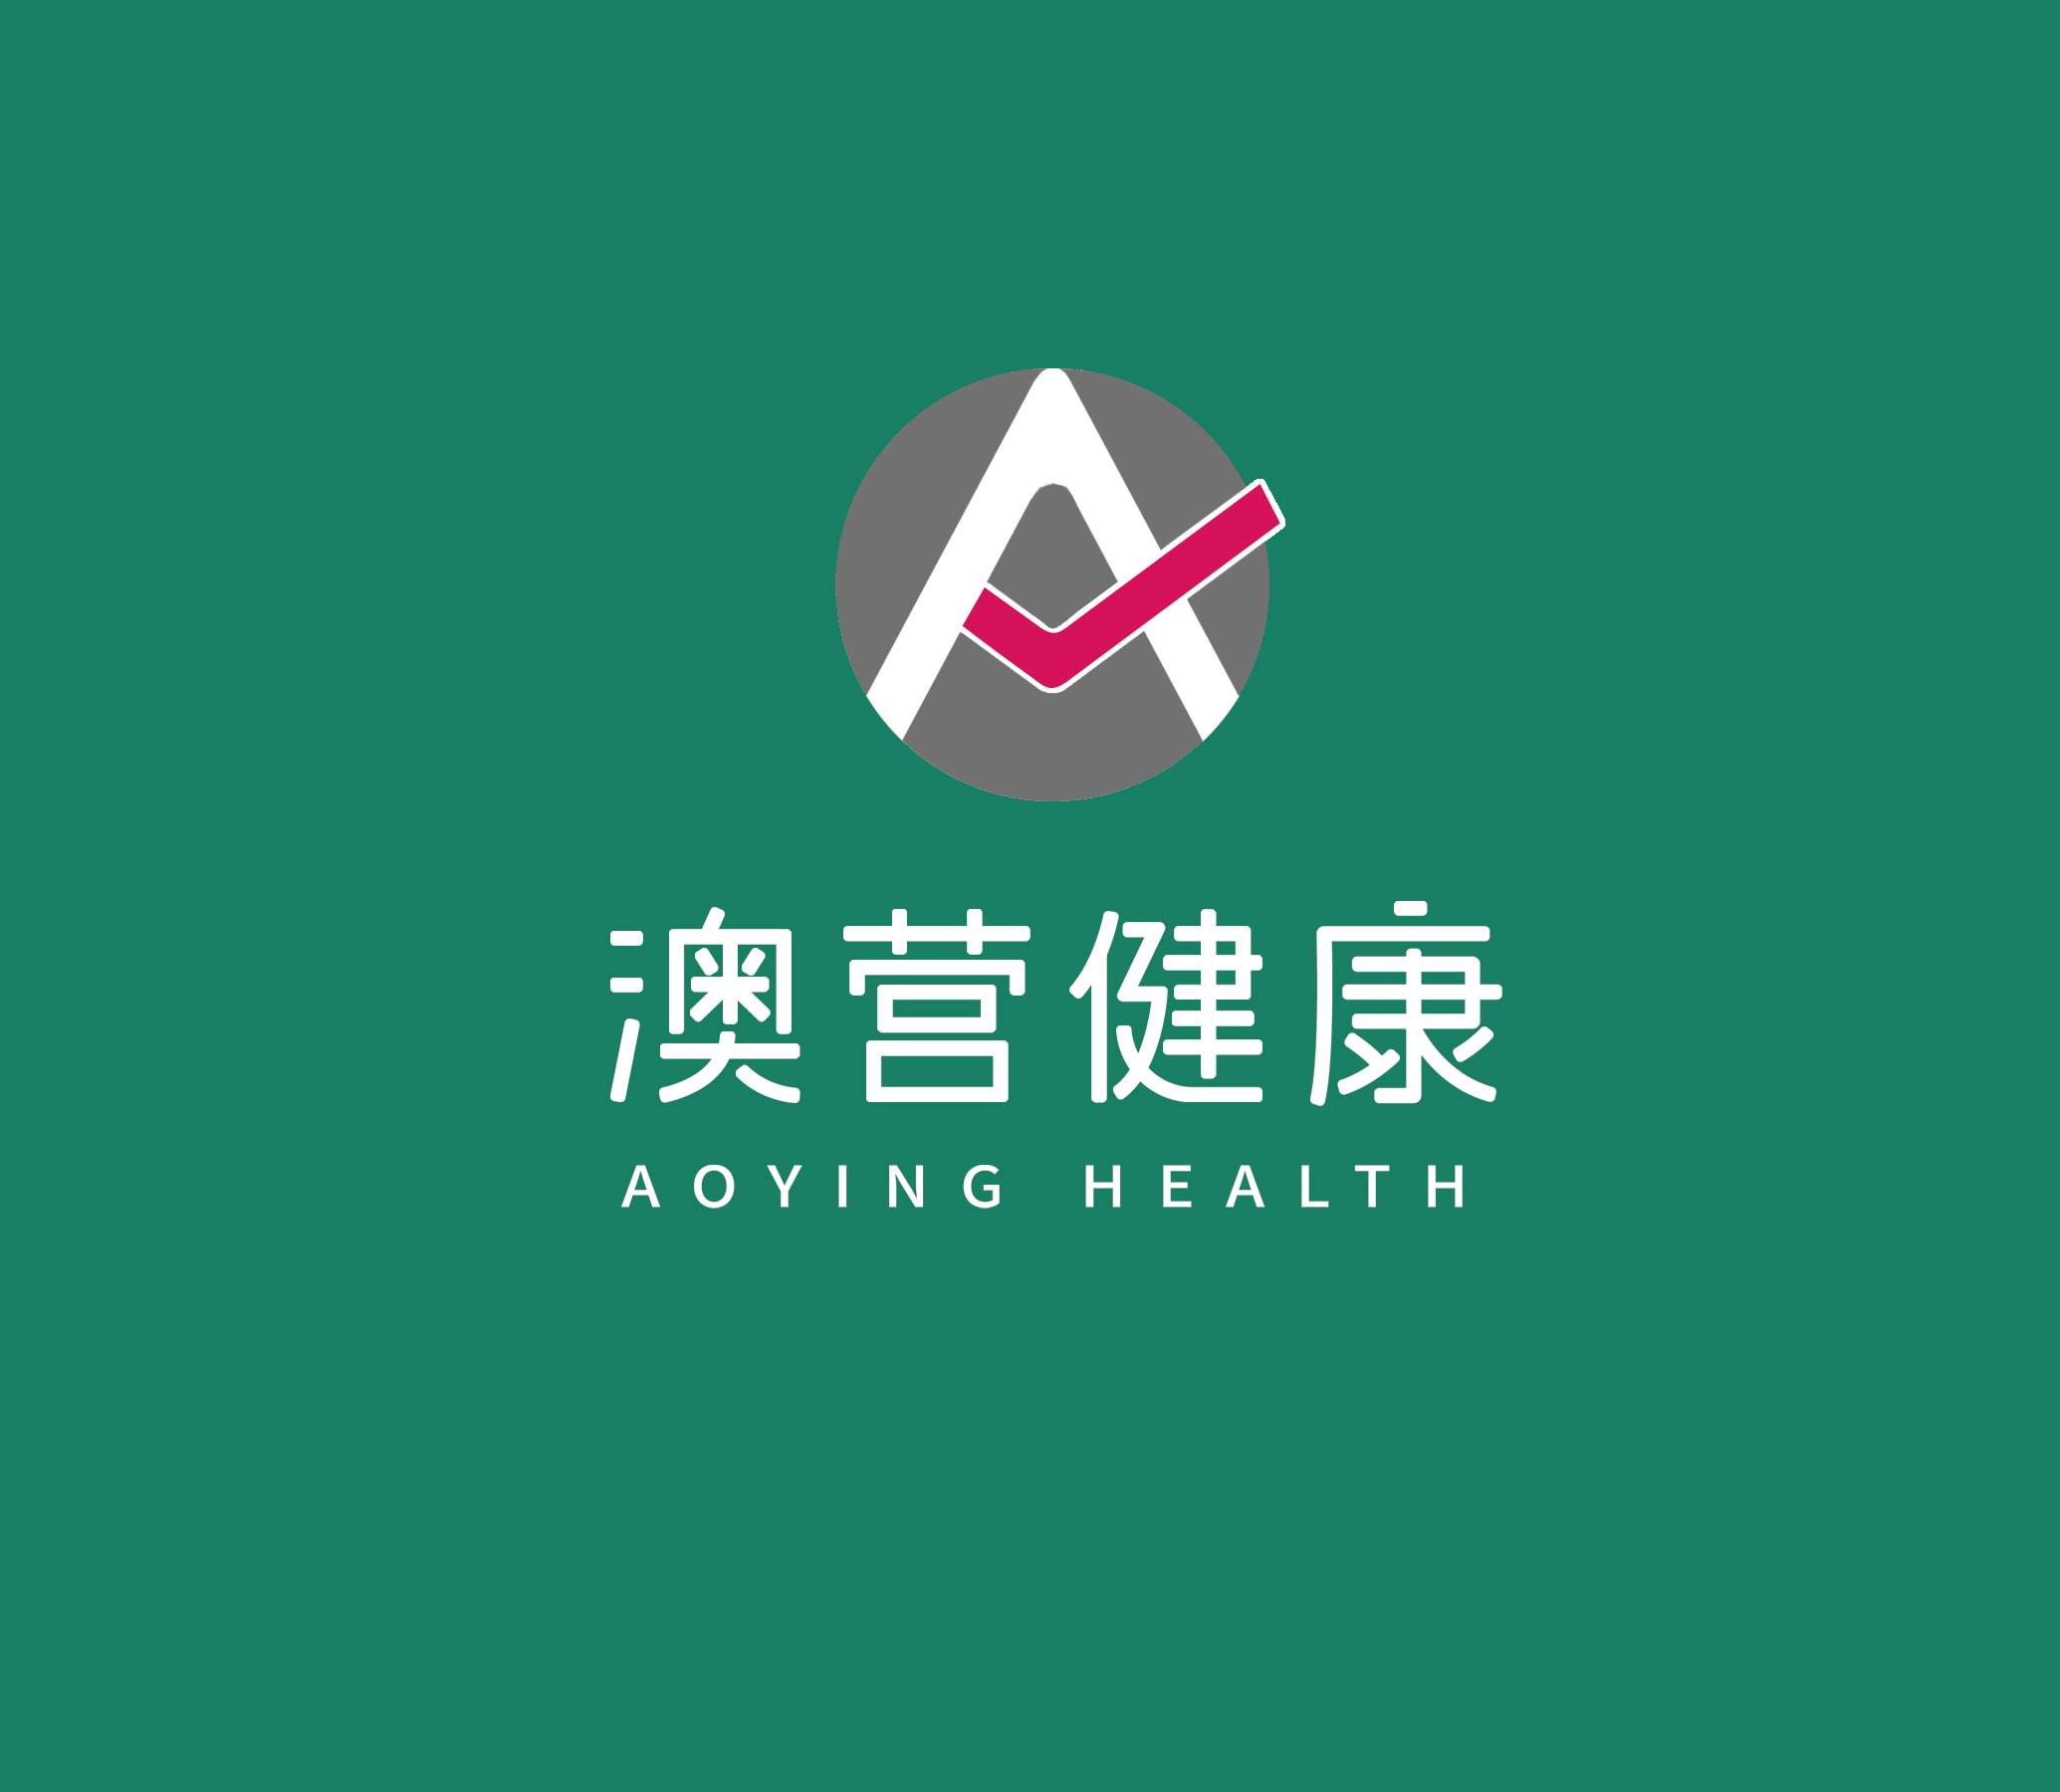 上海澳营见康科技发展有限公司